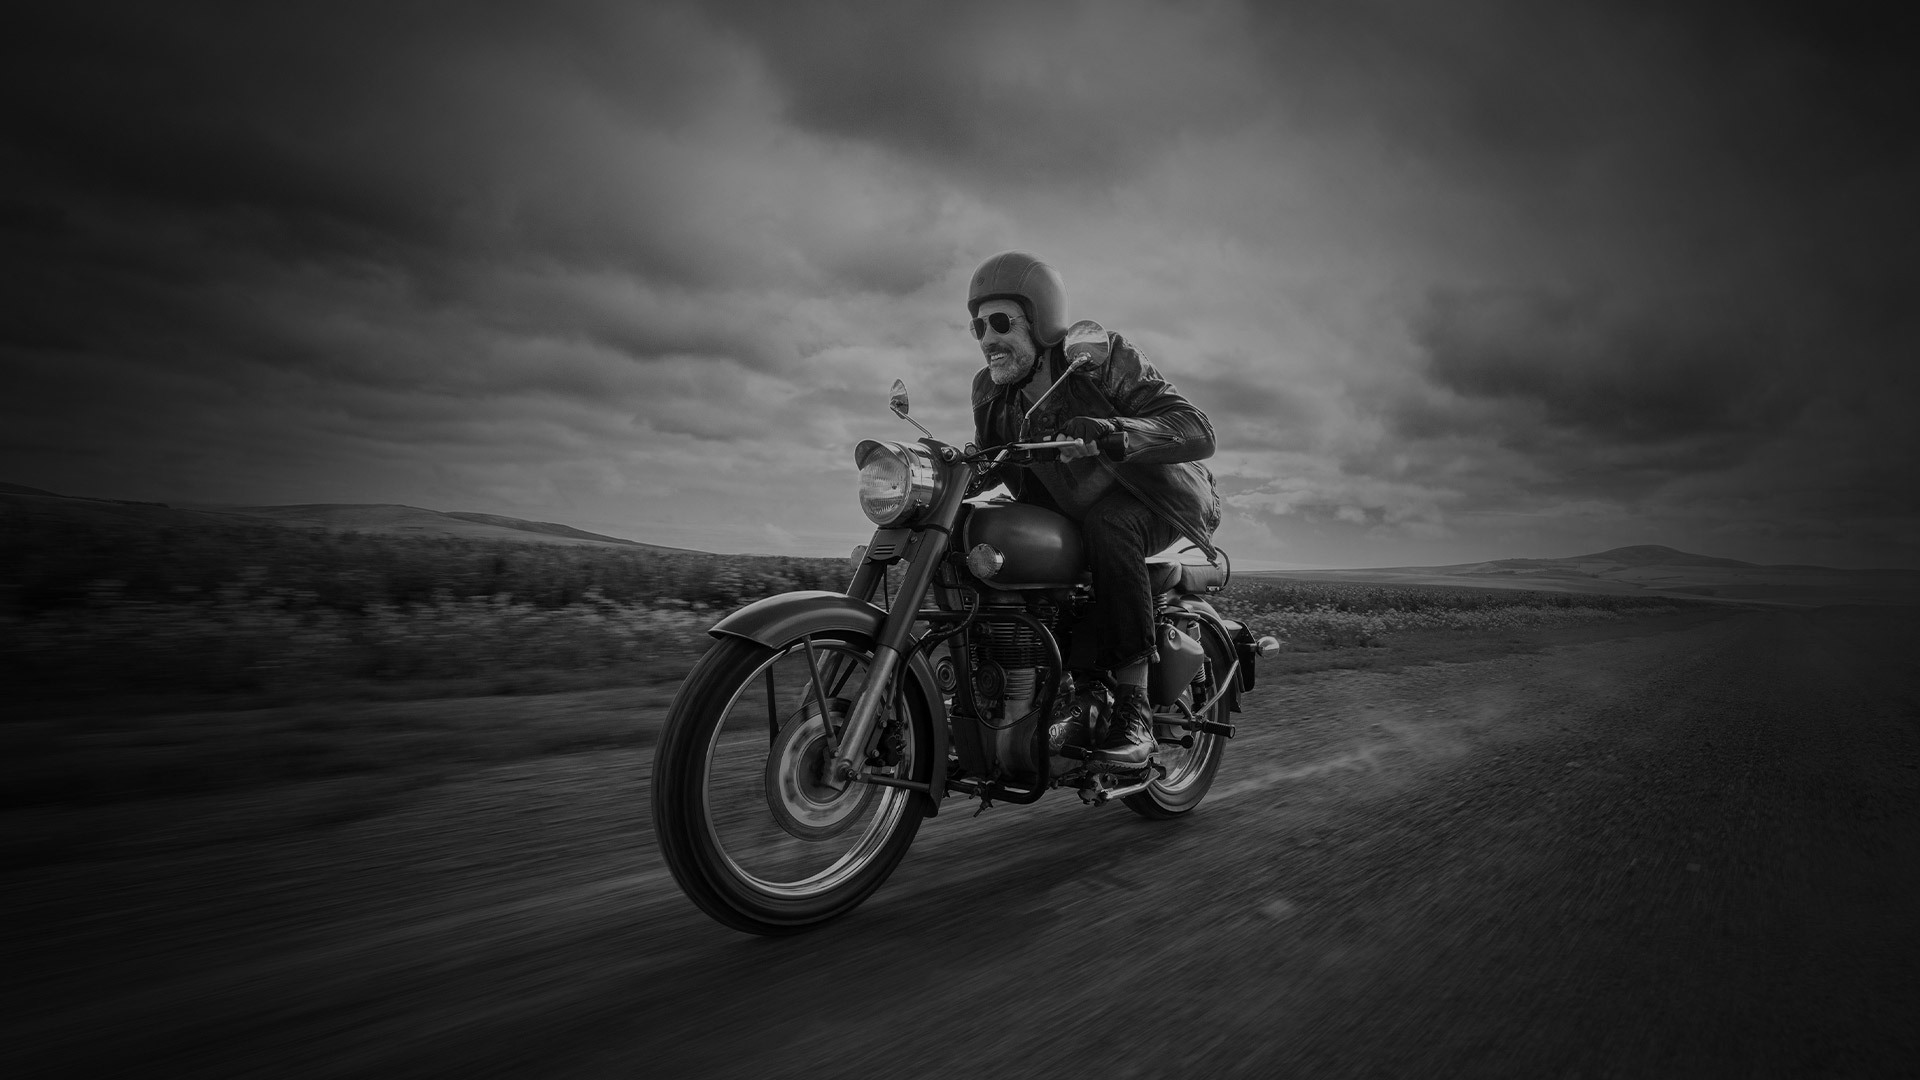 Non-descript man riding motorbike